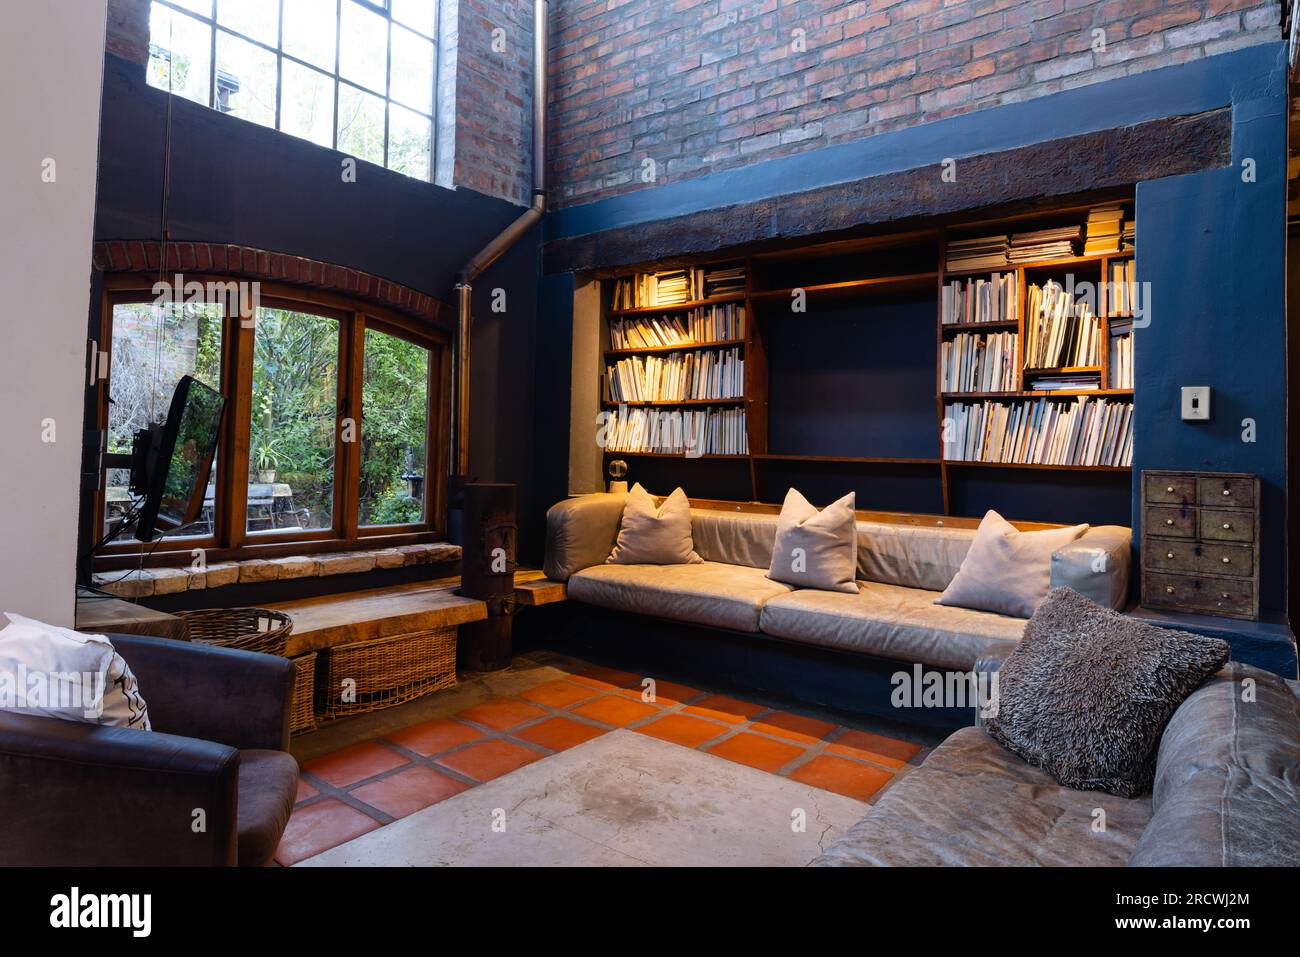 Allgemeiner Blick auf das Wohnzimmer mit Sofas, Sessel, Bücherregal und Fenster Stockfoto